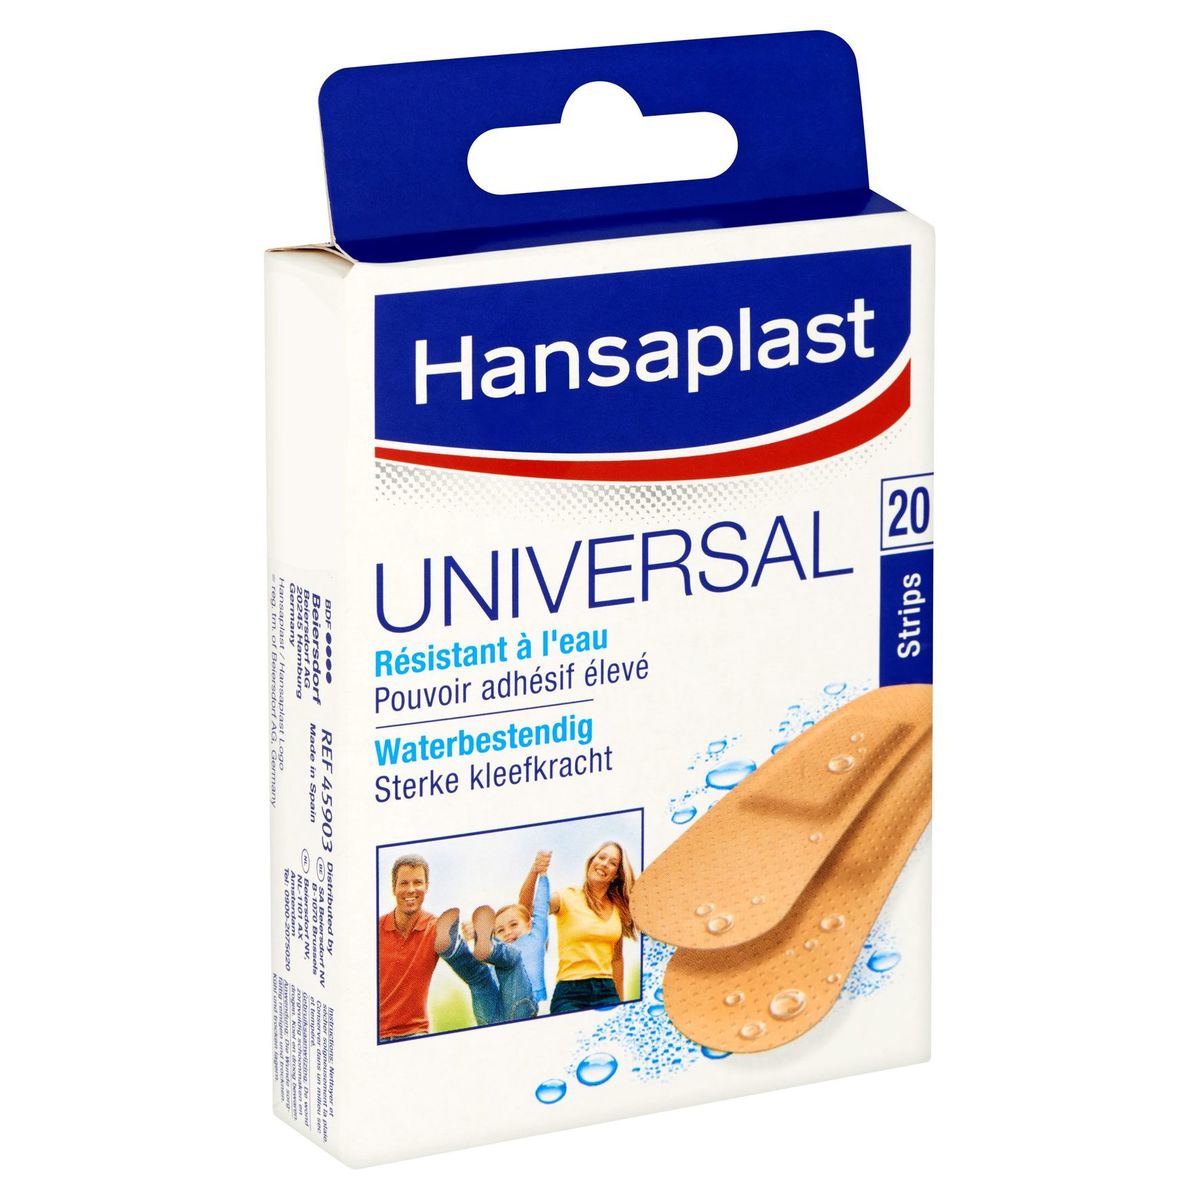 Hansaplast Universal Résistant à l'Eau 20 Strips